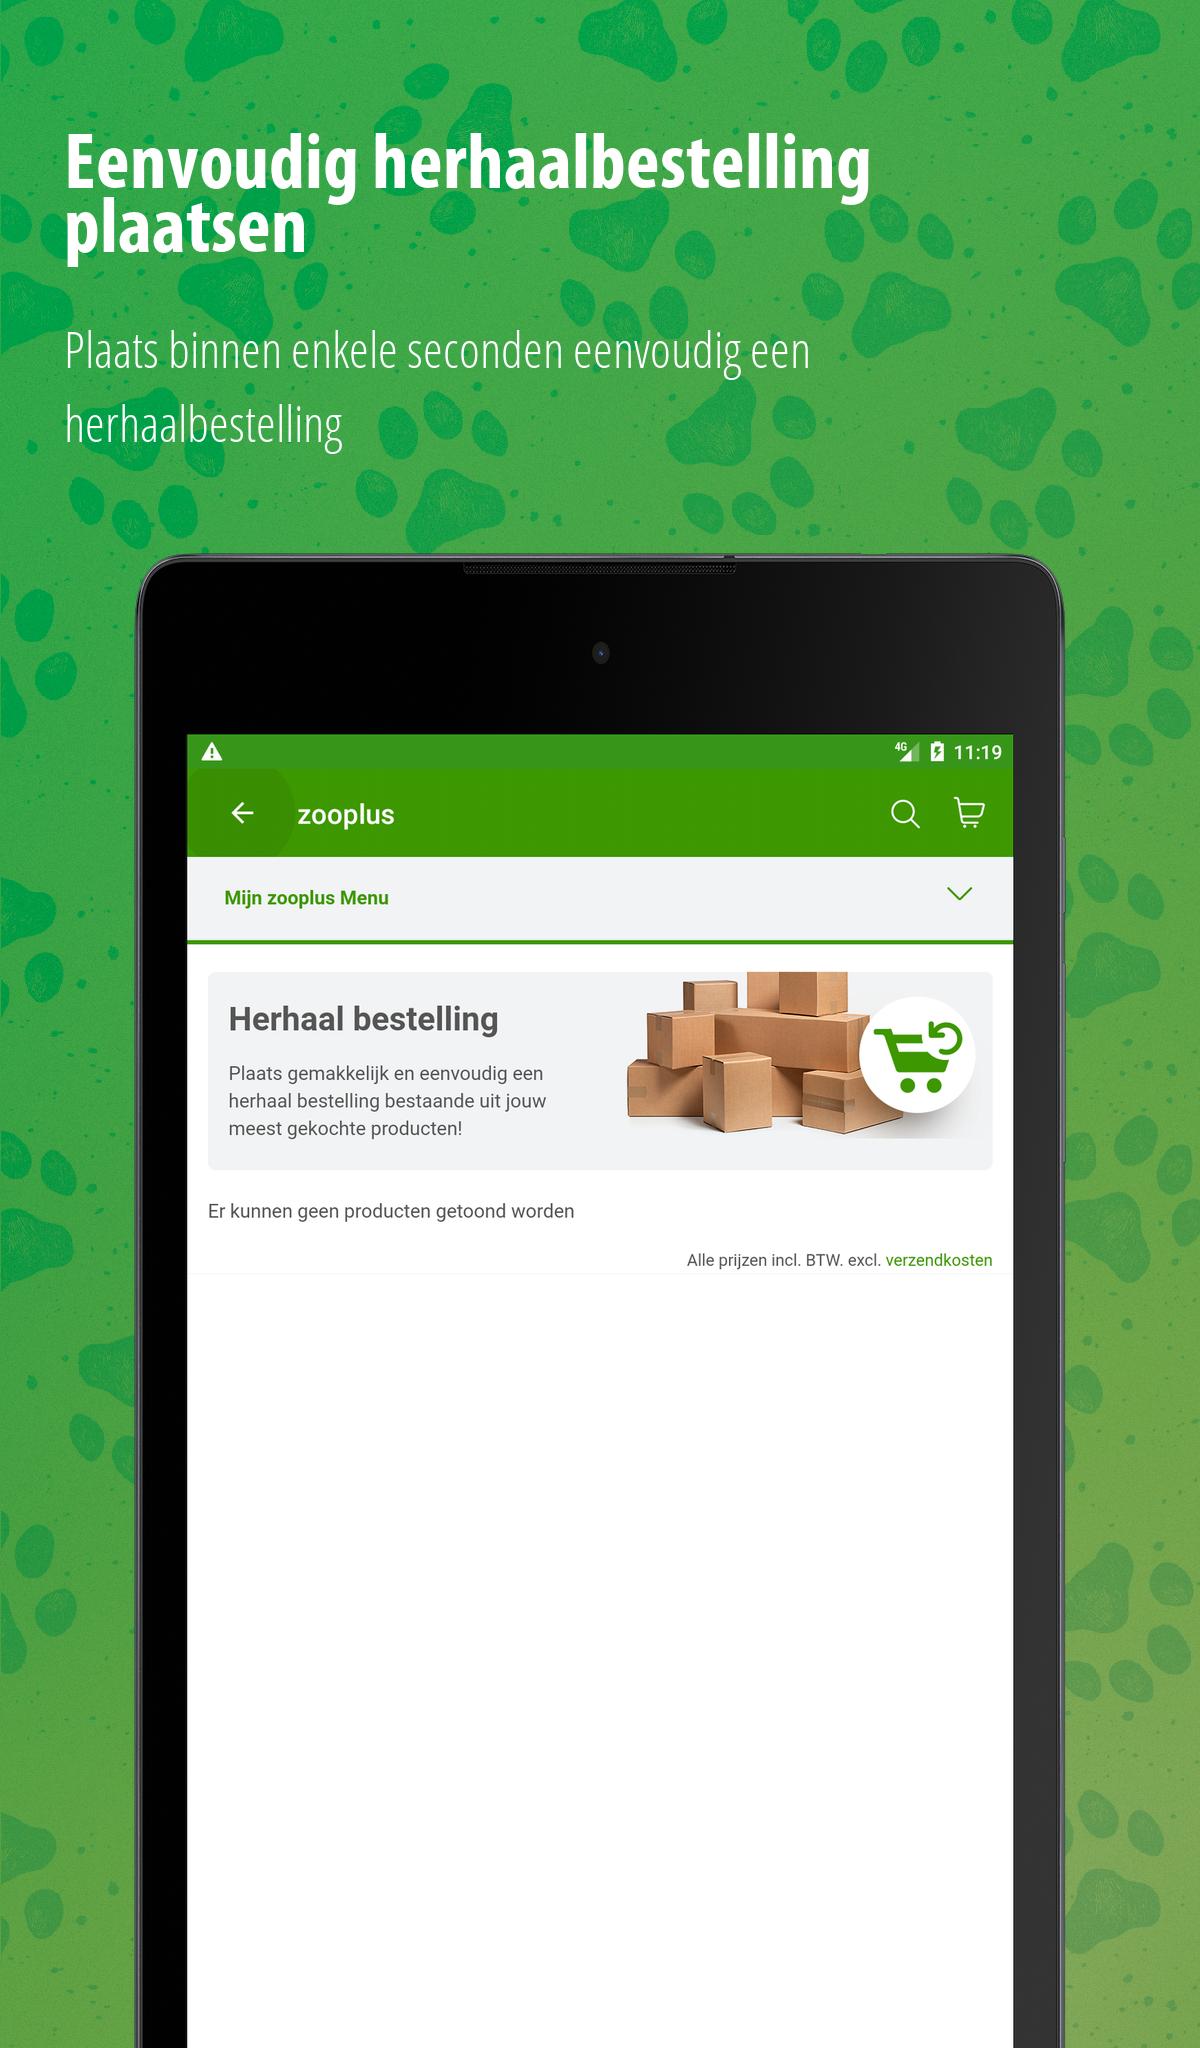 Heiligdom Zuinig Volwassen zooplus for Android - APK Download